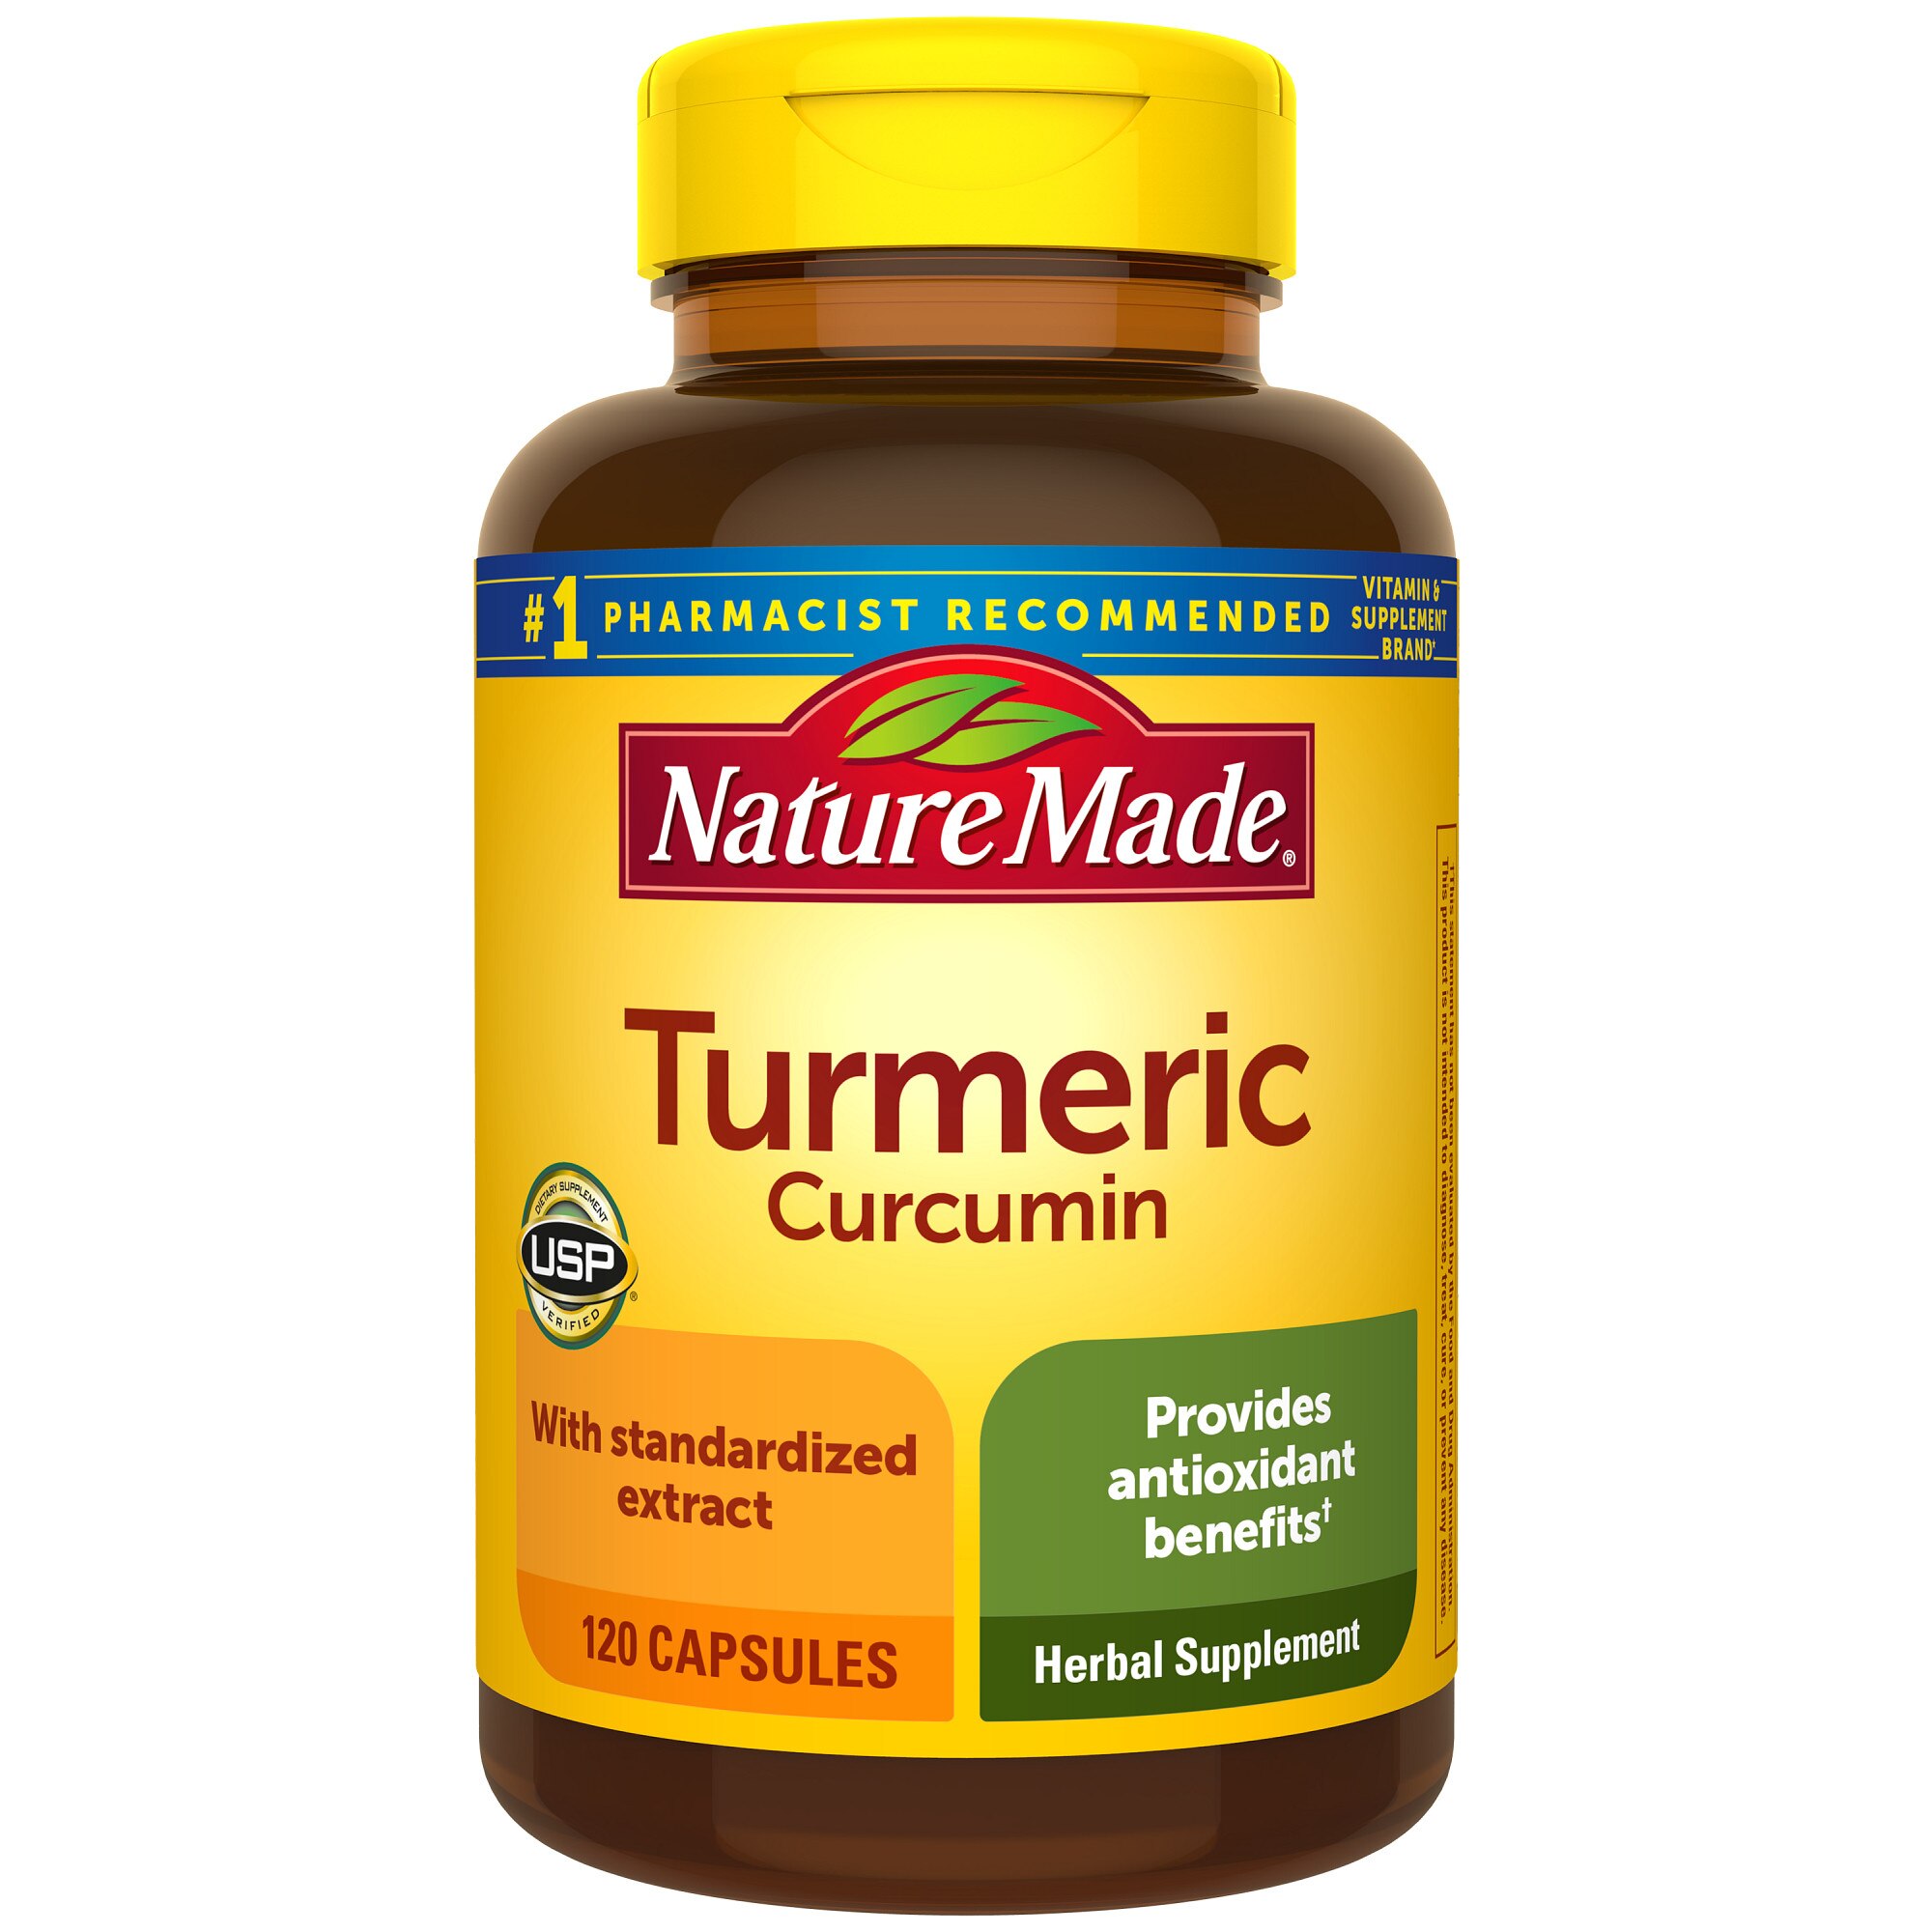 Nature Made Turmeric Curcumin 500 mg Capsules, 120 CT